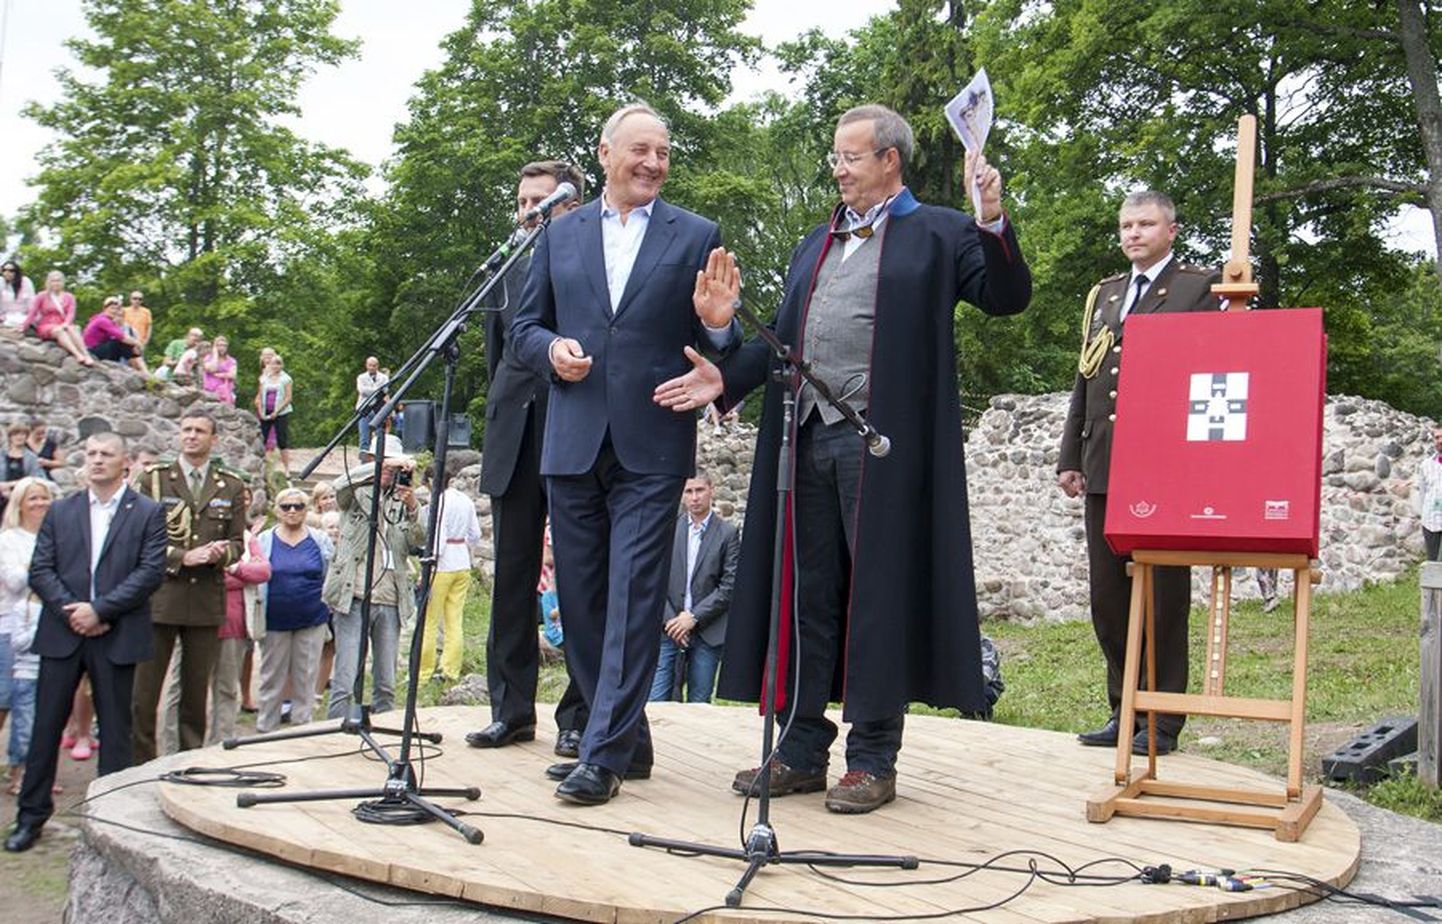 Minevik ühendab. Läti president Andris Berzinš ja Eesti president Toomas Hendrik Ilves märkisid, et kahel riigil on palju ühist ning järgmisest aastast on rahagi ühine. Taustal paremal on hinnaline 50-kilone raamat.